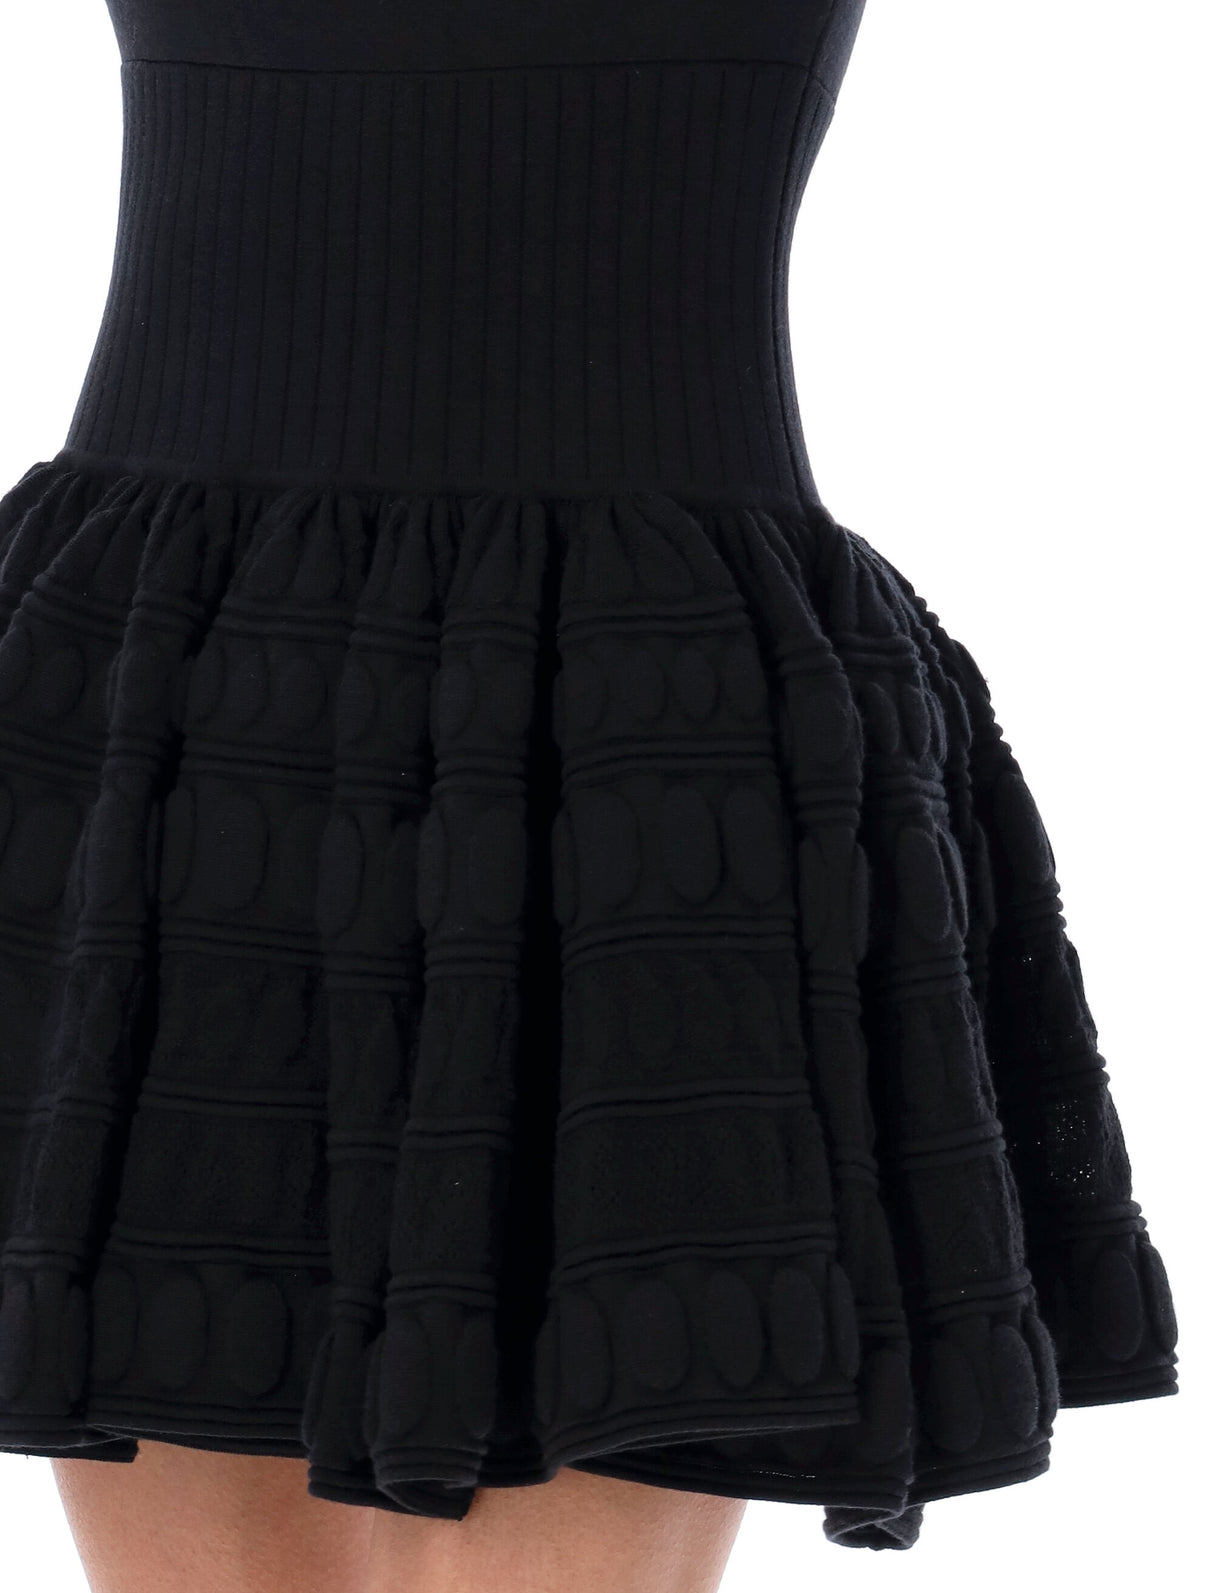 Đầm xòe đen sành điệu với chất liệu phía dưới là hai lớp vải lụa và ren - Bộ sưu tập SS24